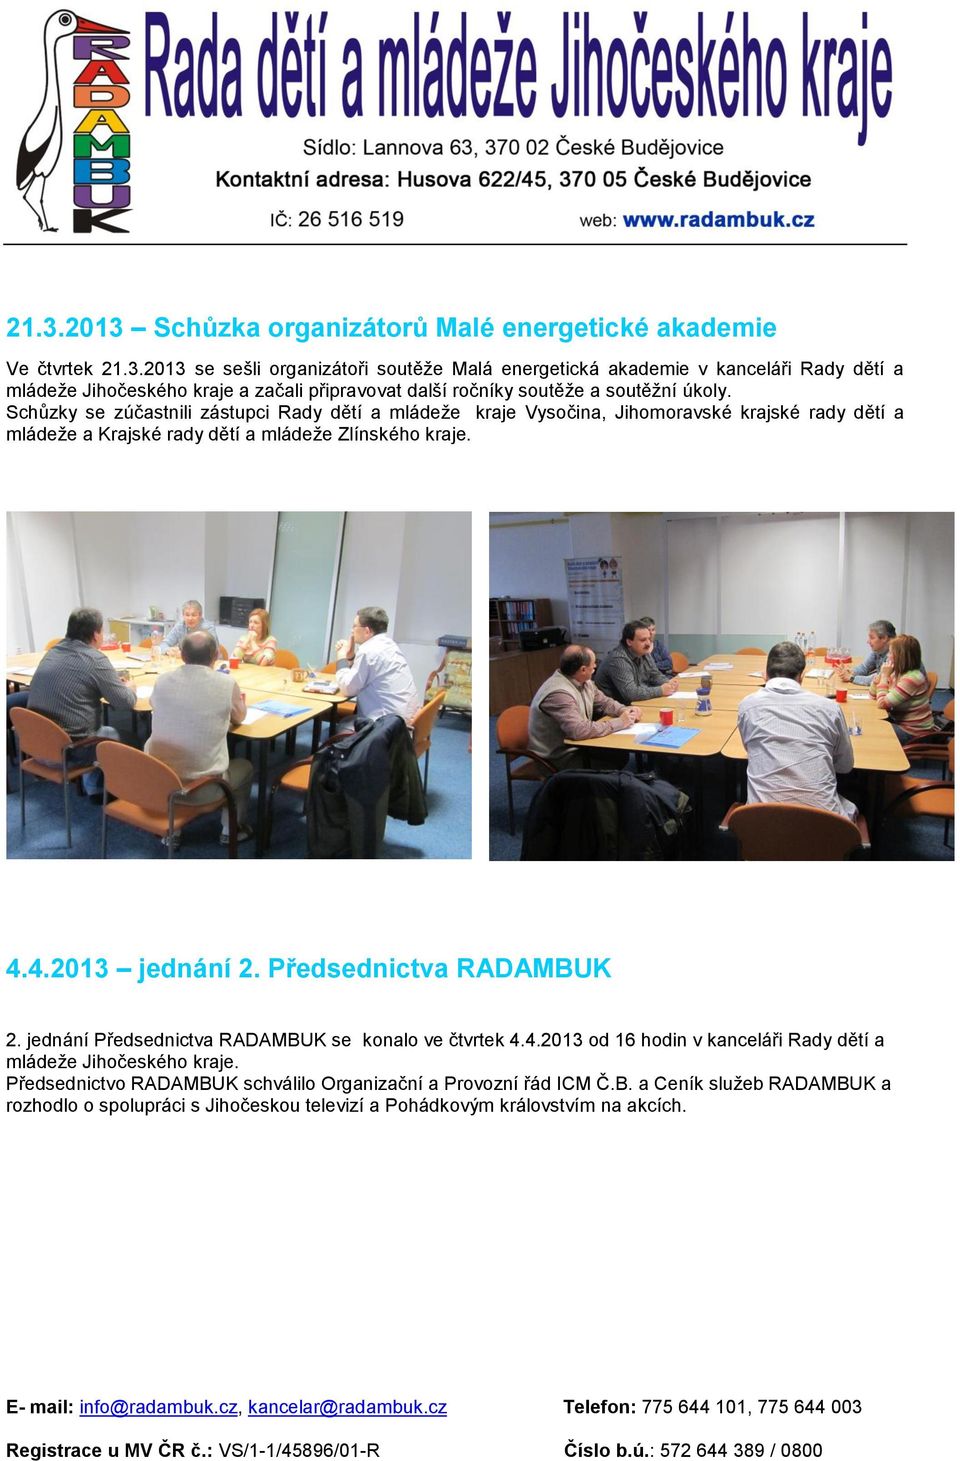 Předsednictva RADAMBUK 2. jednání Předsednictva RADAMBUK se konalo ve čtvrtek 4.4.2013 od 16 hodin v kanceláři Rady dětí a mládeže Jihočeského kraje.